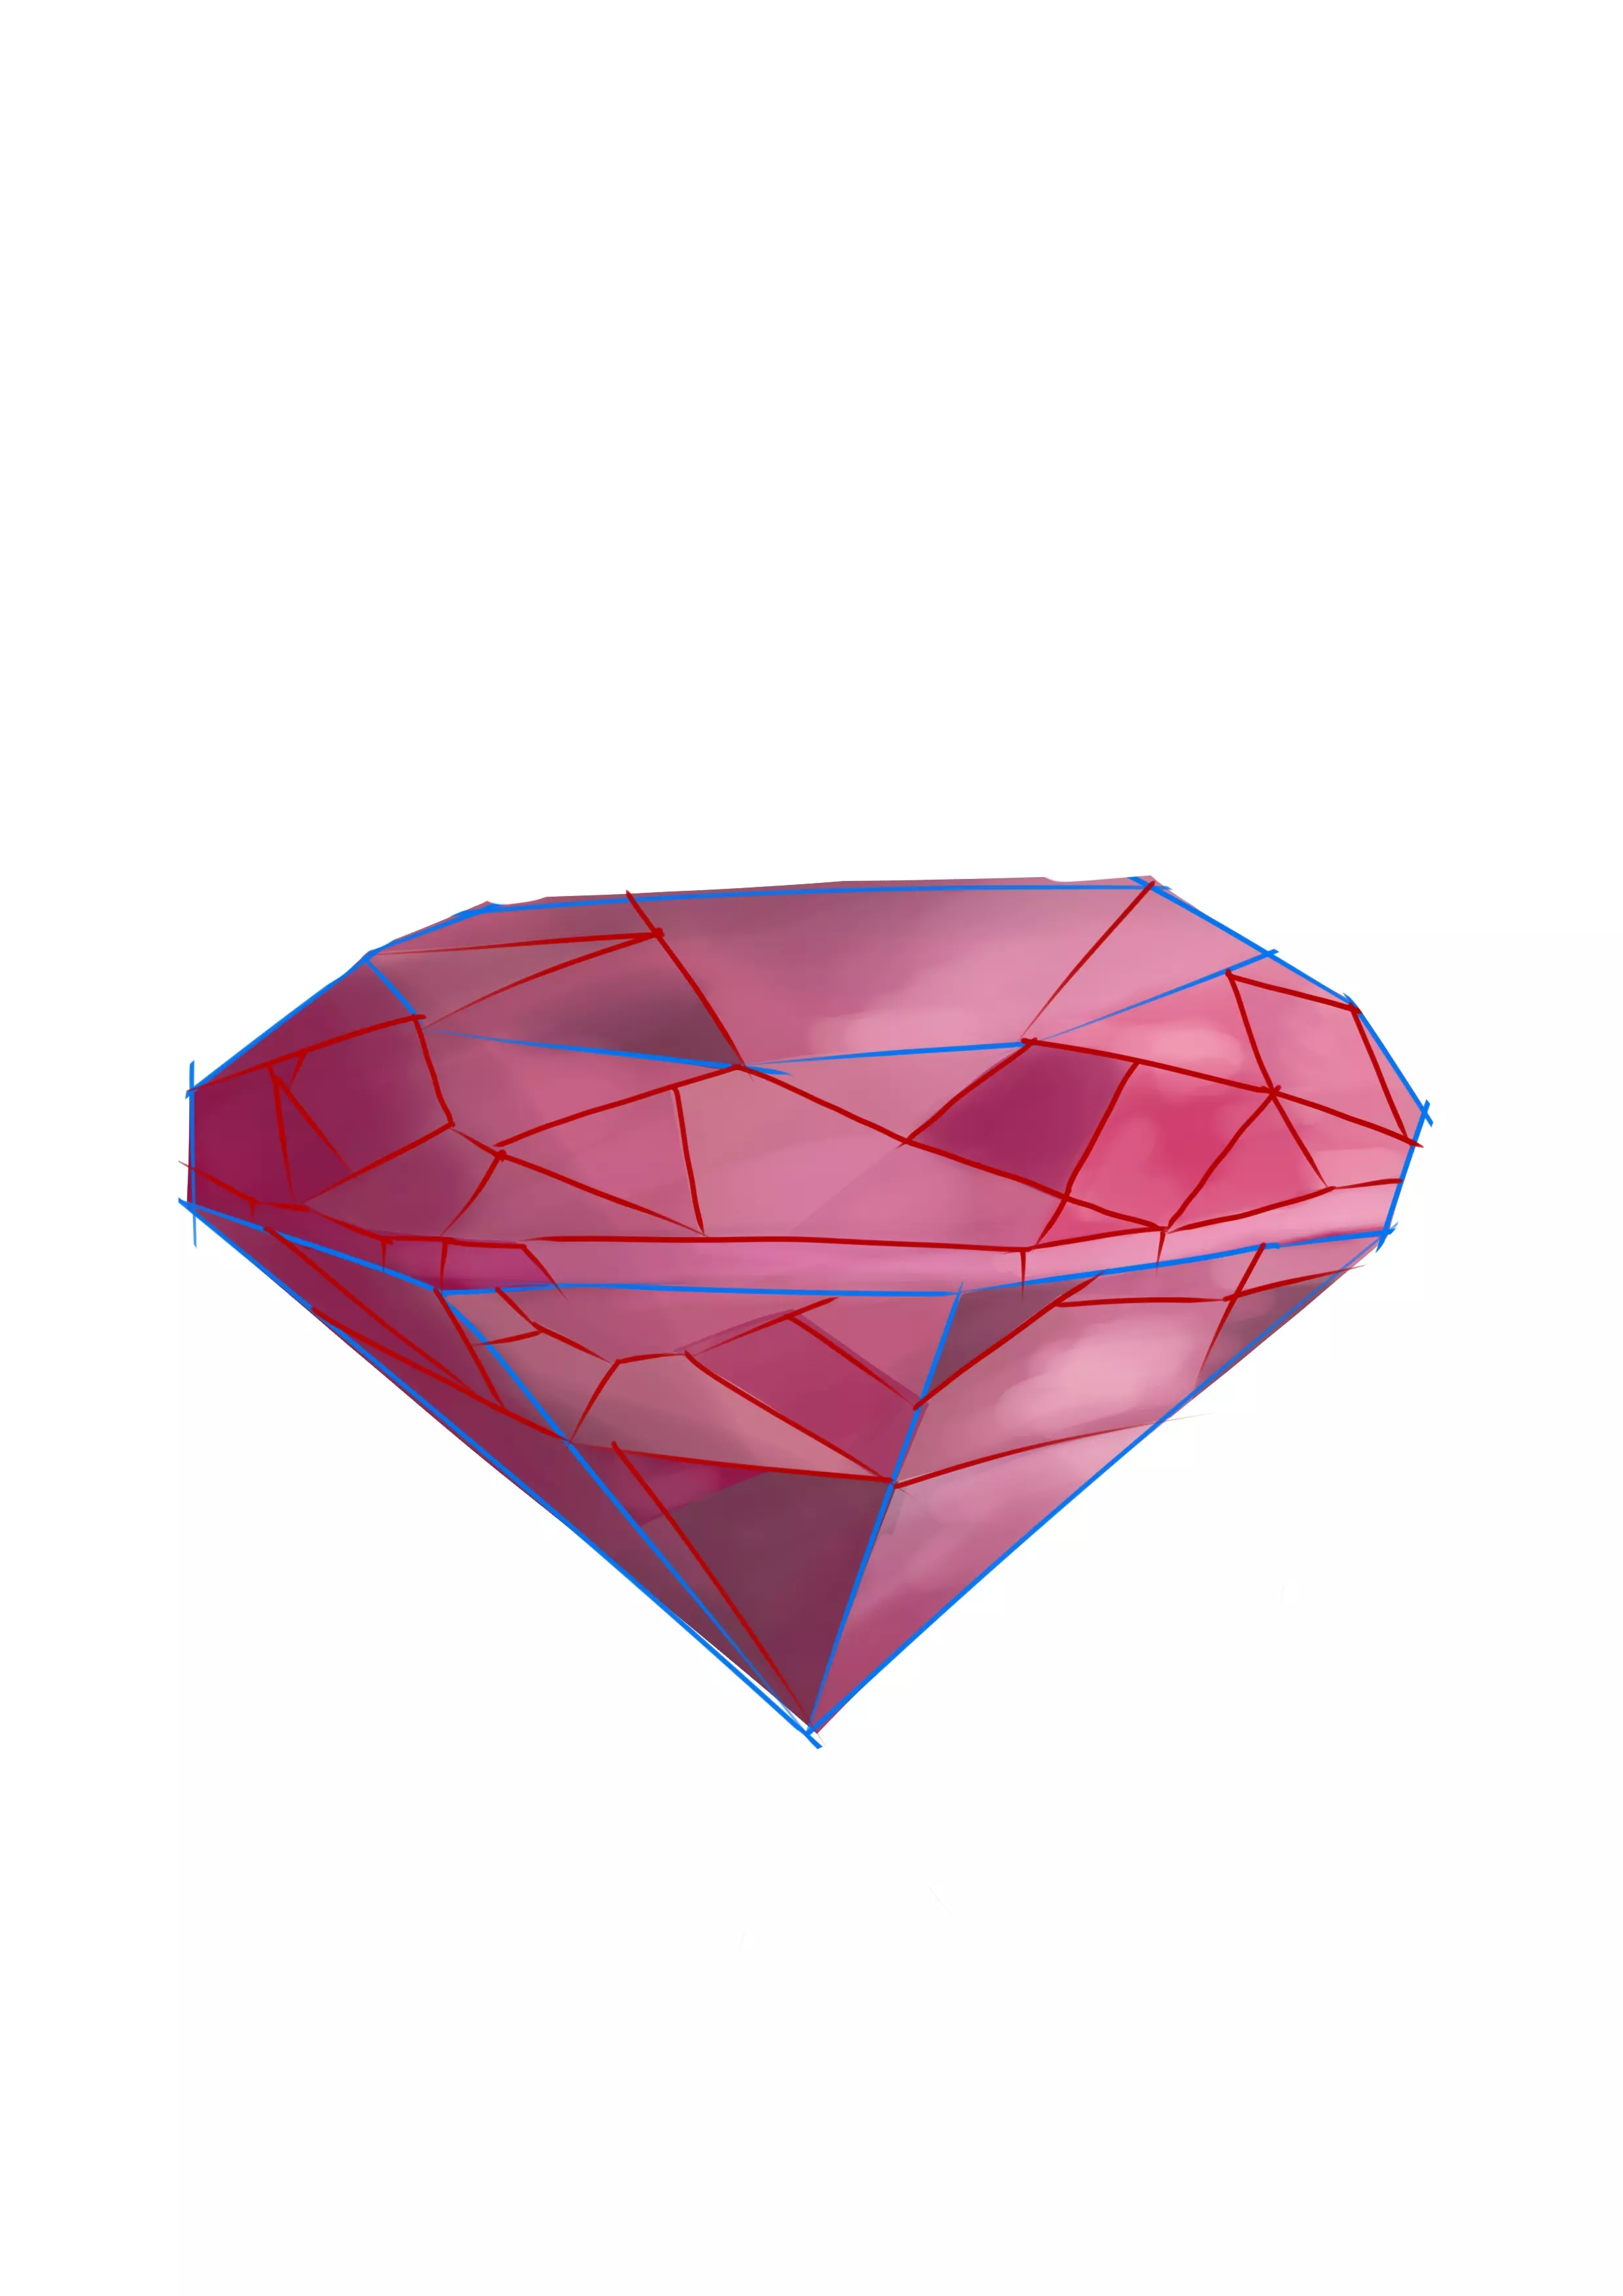 dessin en couleur des différentes teintes d’un diamant